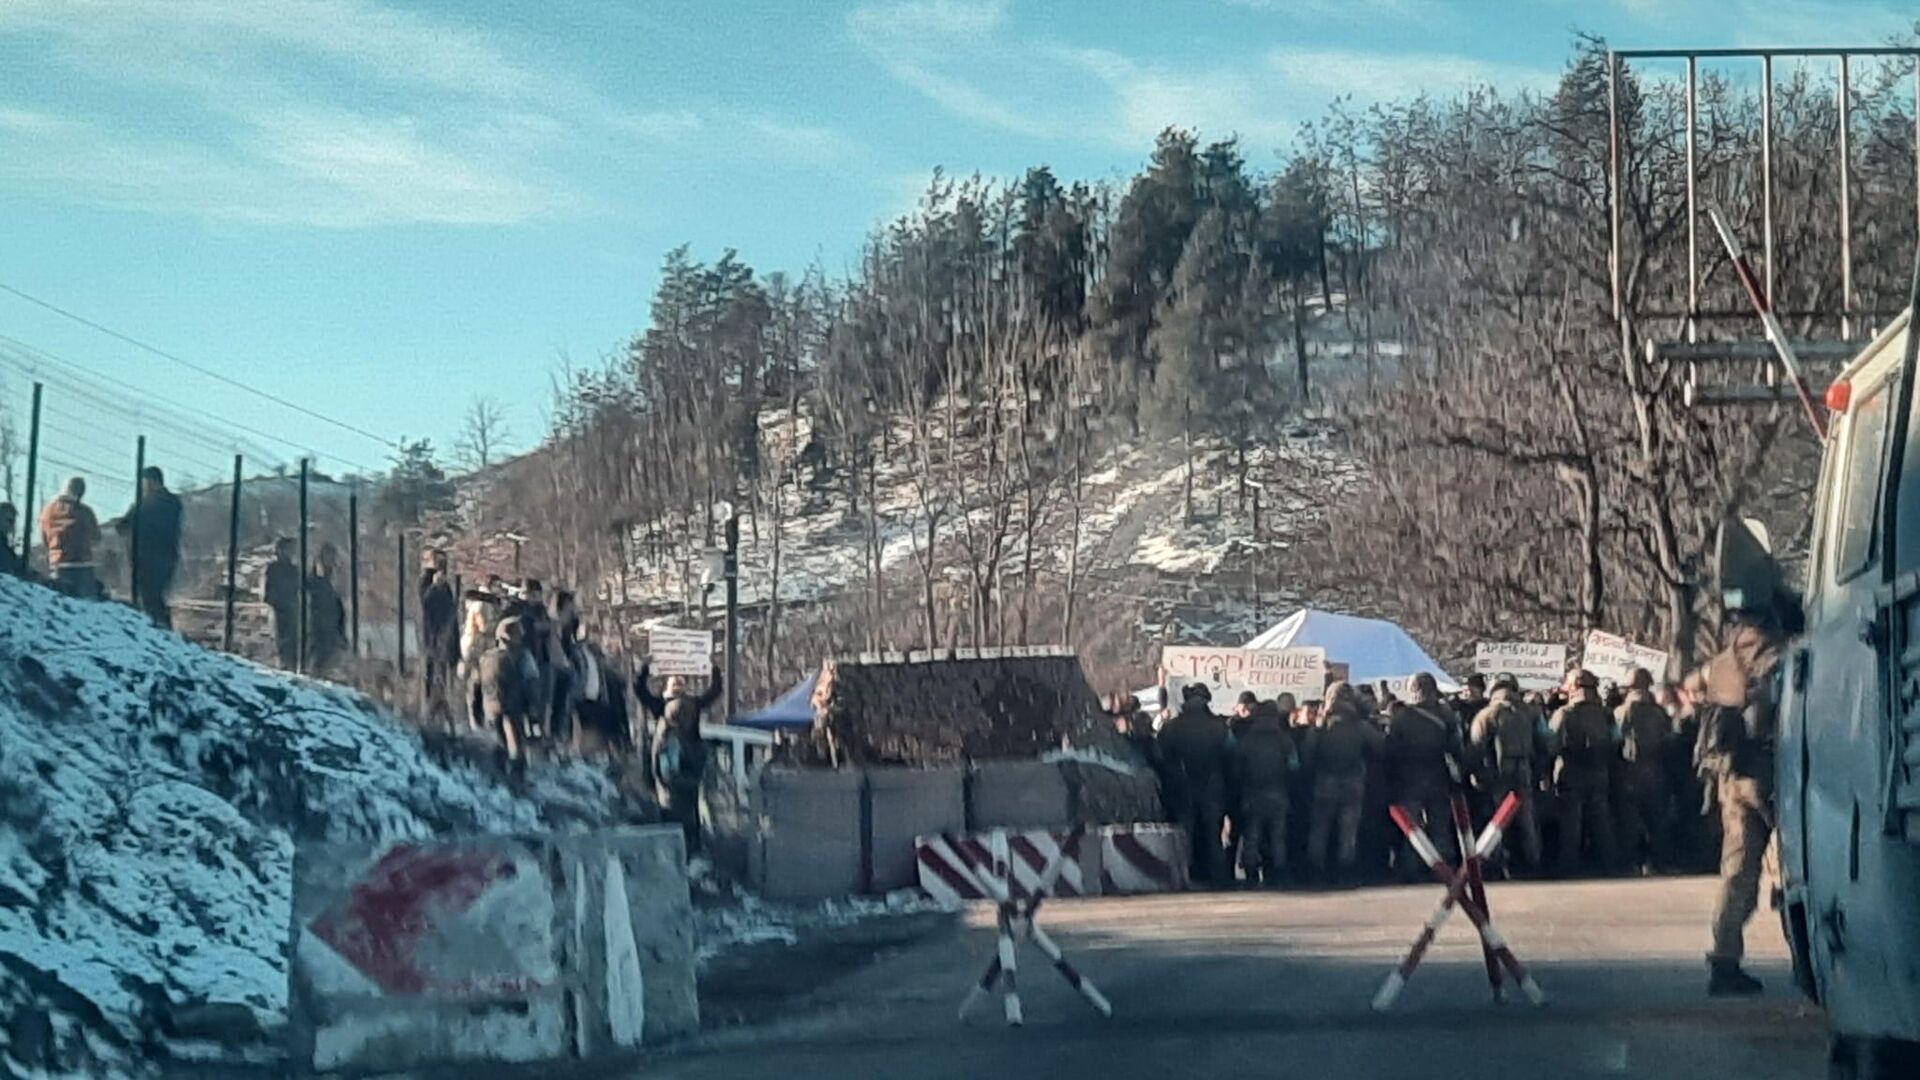 Ադրբեջանի իշխանությունները հերքում են, թե պատասխանատու են ճանապարհի փակման համար, սակայն սատարում են բողոքի ցույցերը. Human Rights Watch